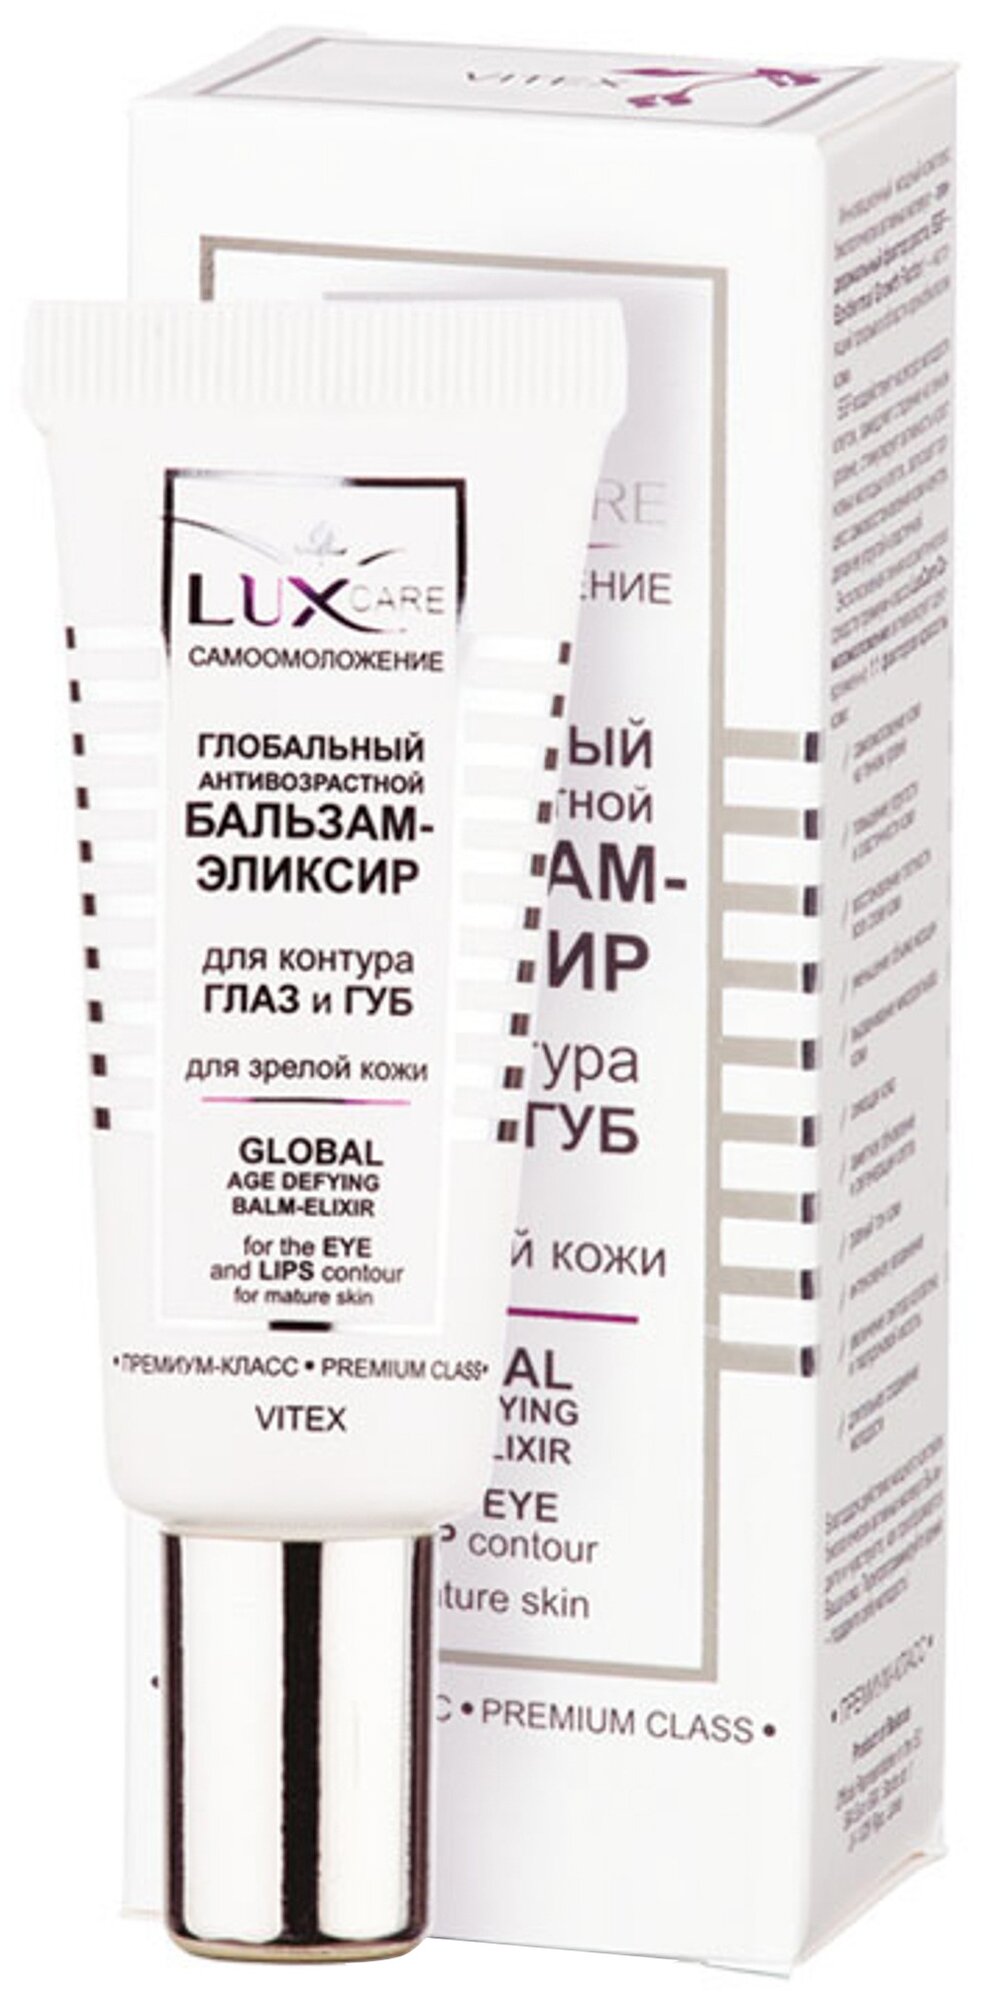 LUX CARE Глобальный антивозр. бальзам-элексир для контура глаз и губ 20мл.*15 Витэкс